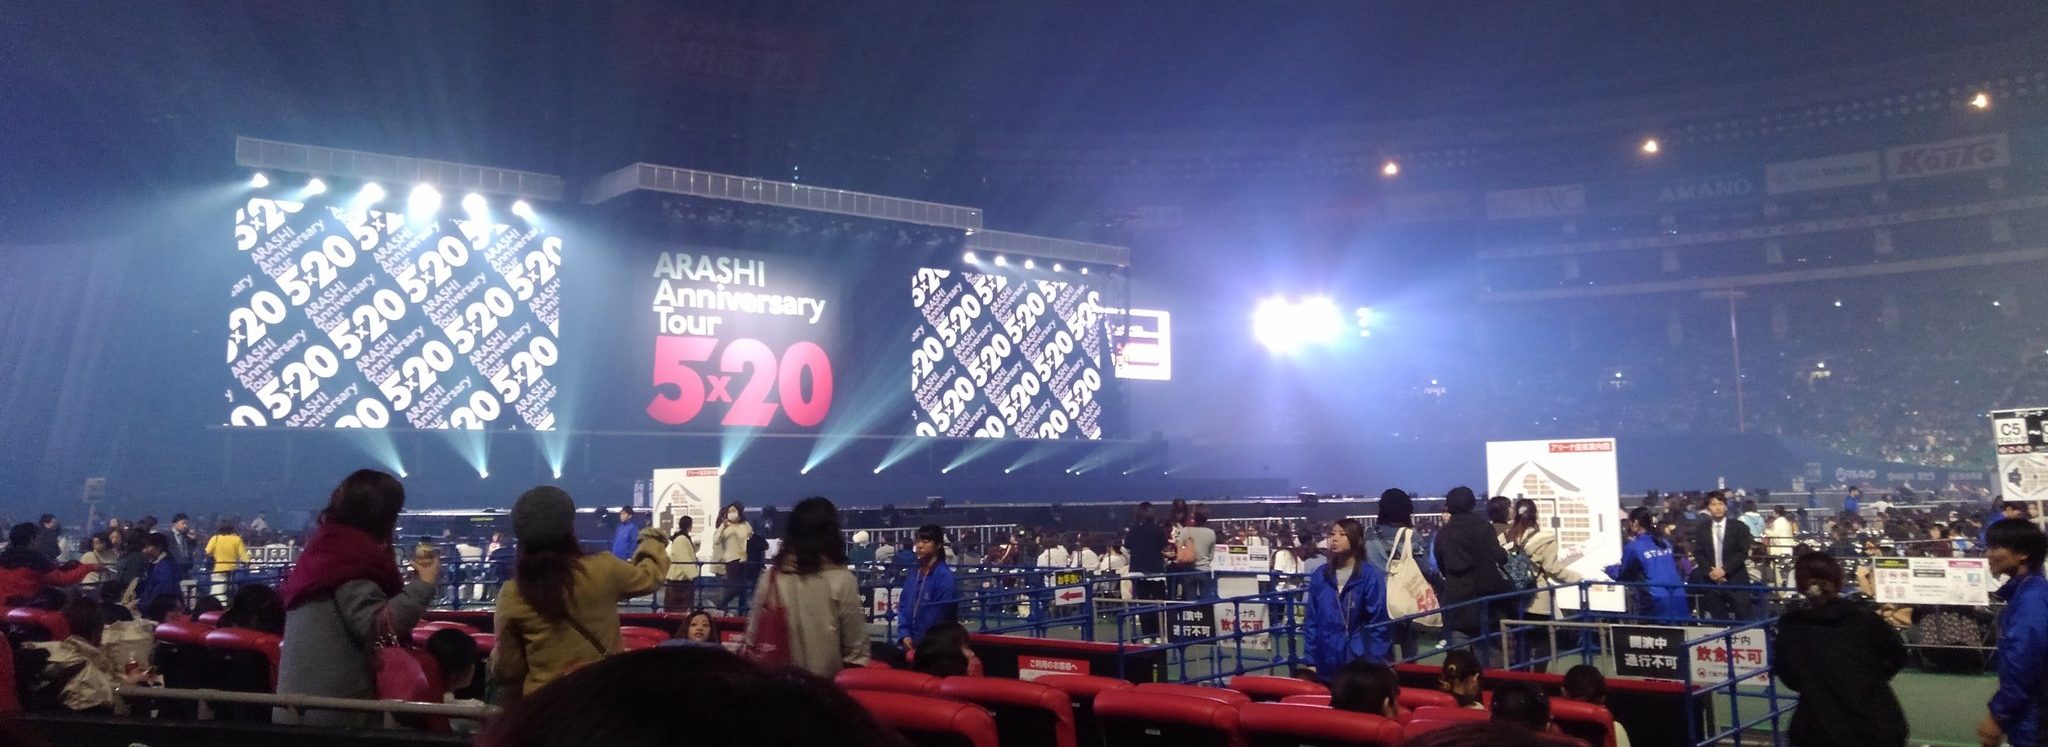 嵐 コンサート 福岡 Arashi Anniversary Tour 5 セトリ 座席 デジチケ Qr ゲート 18 19 ライブ ネタバレ レポ ページ 2 Tlクリップ